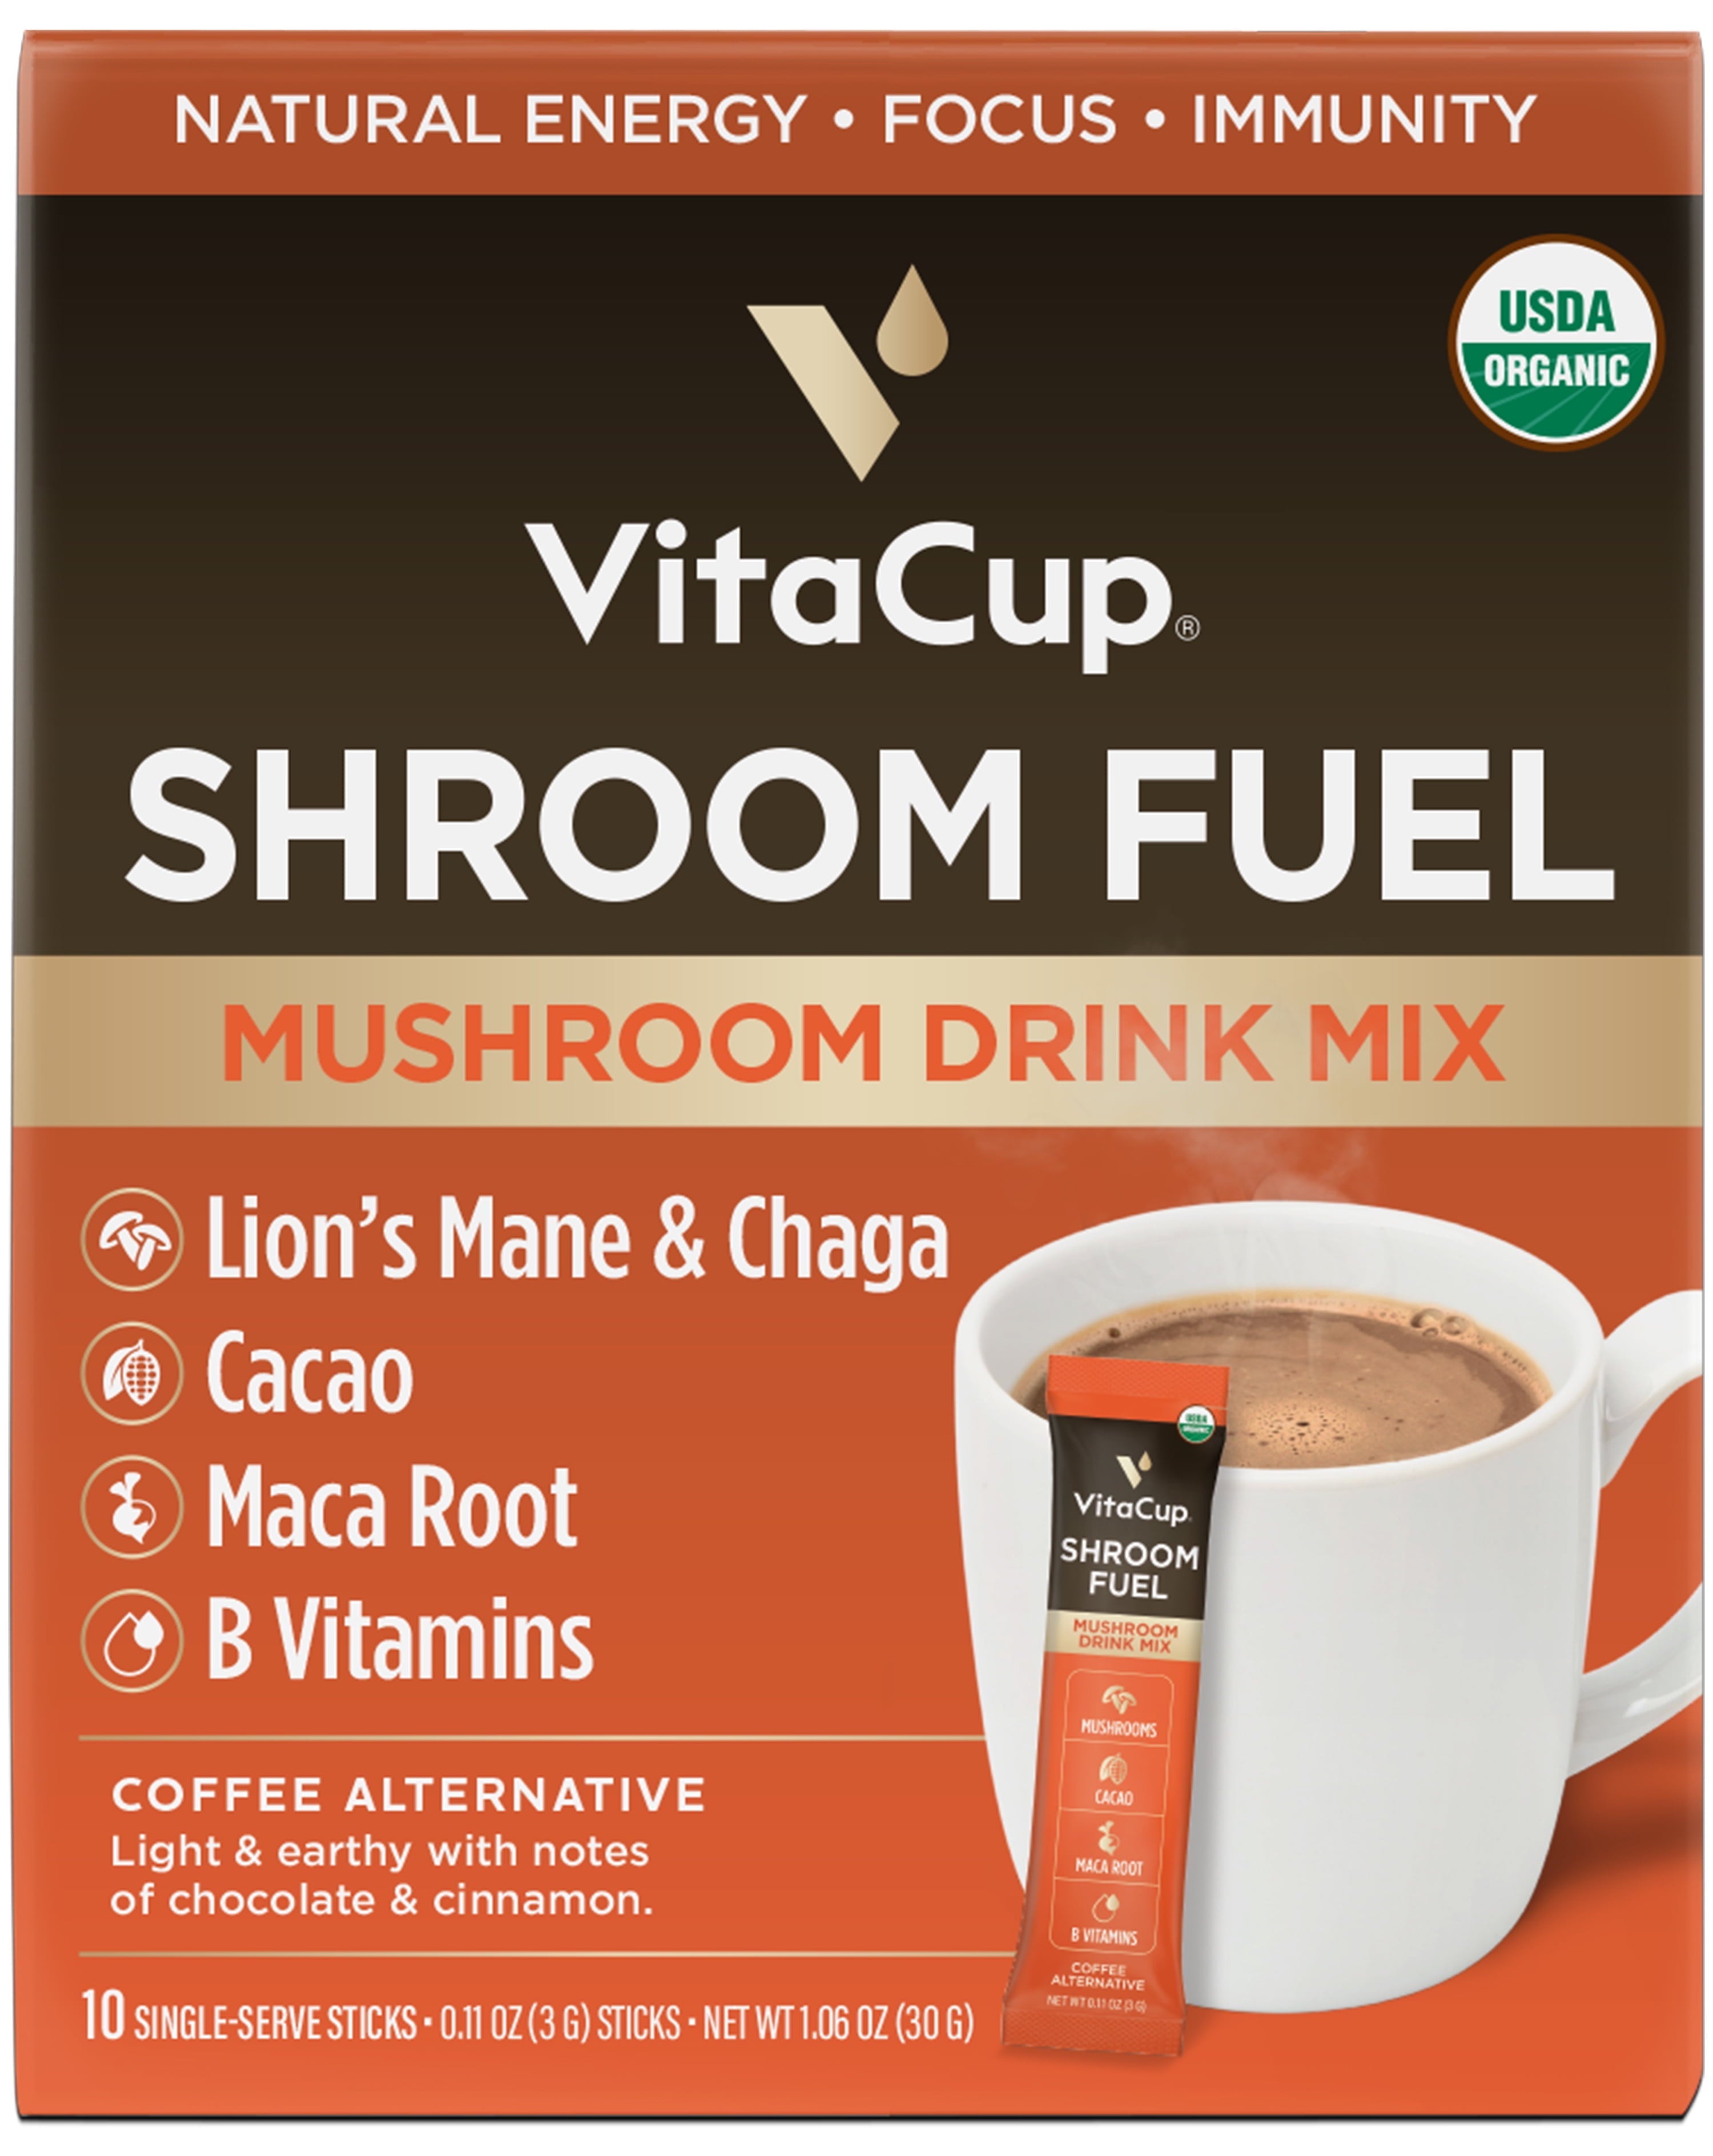 VitaCup Shroom Fuel Mushroom Based 1.06 Oz